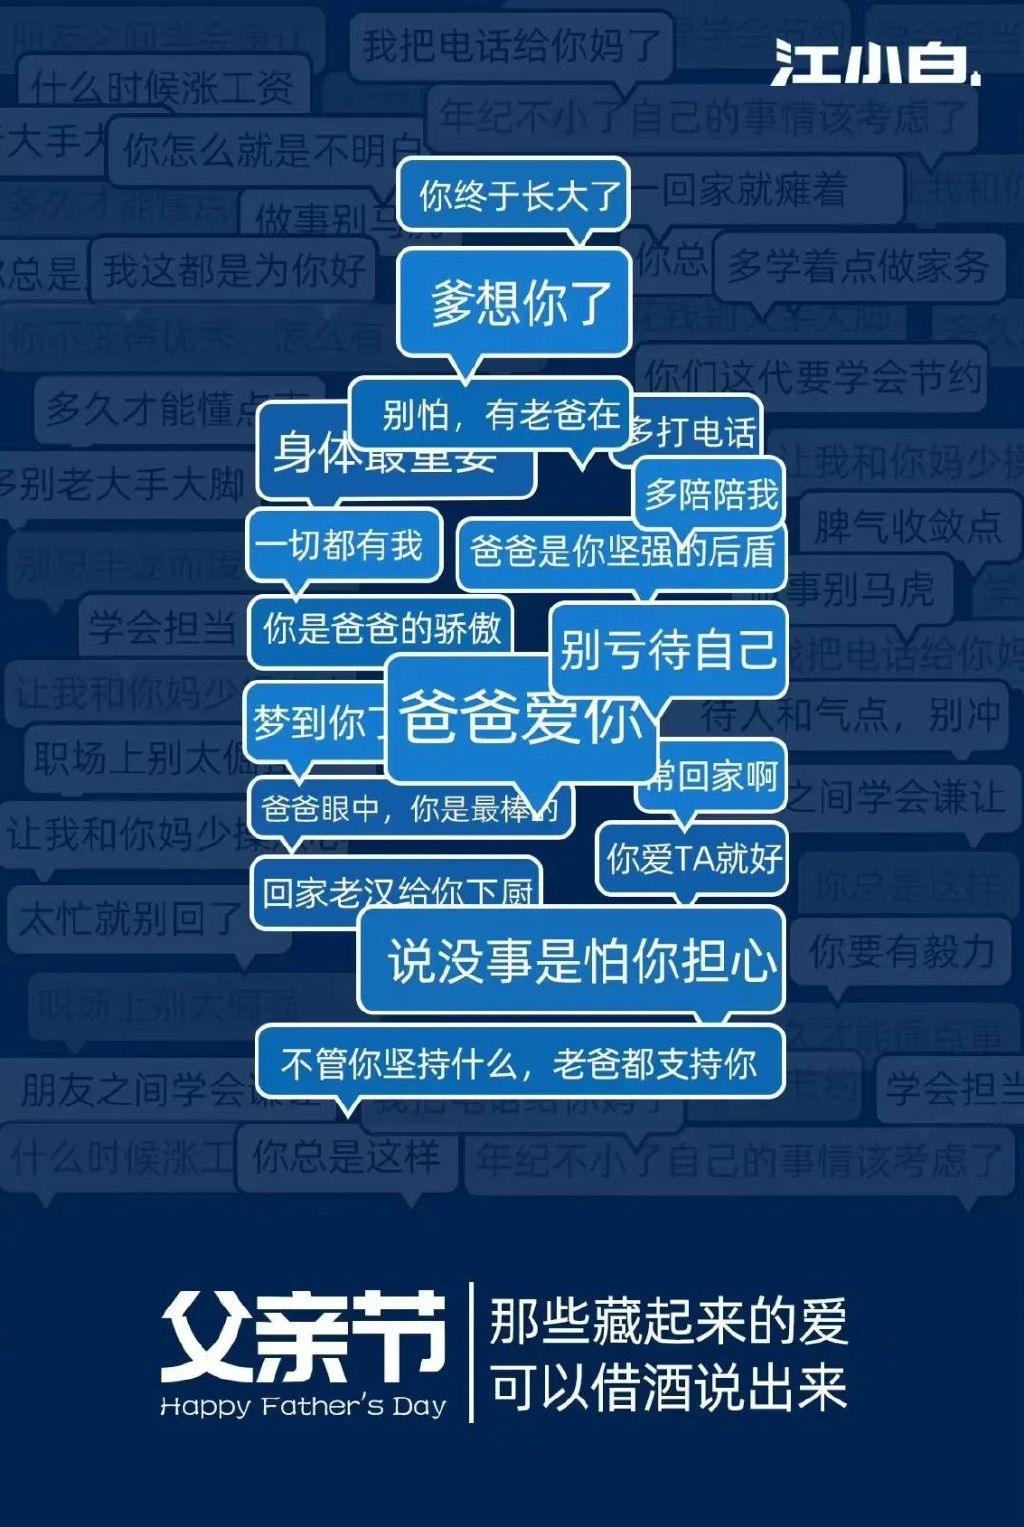 董宇辉山西文案出圈，被赞为文旅文案天花板 - 4A广告网